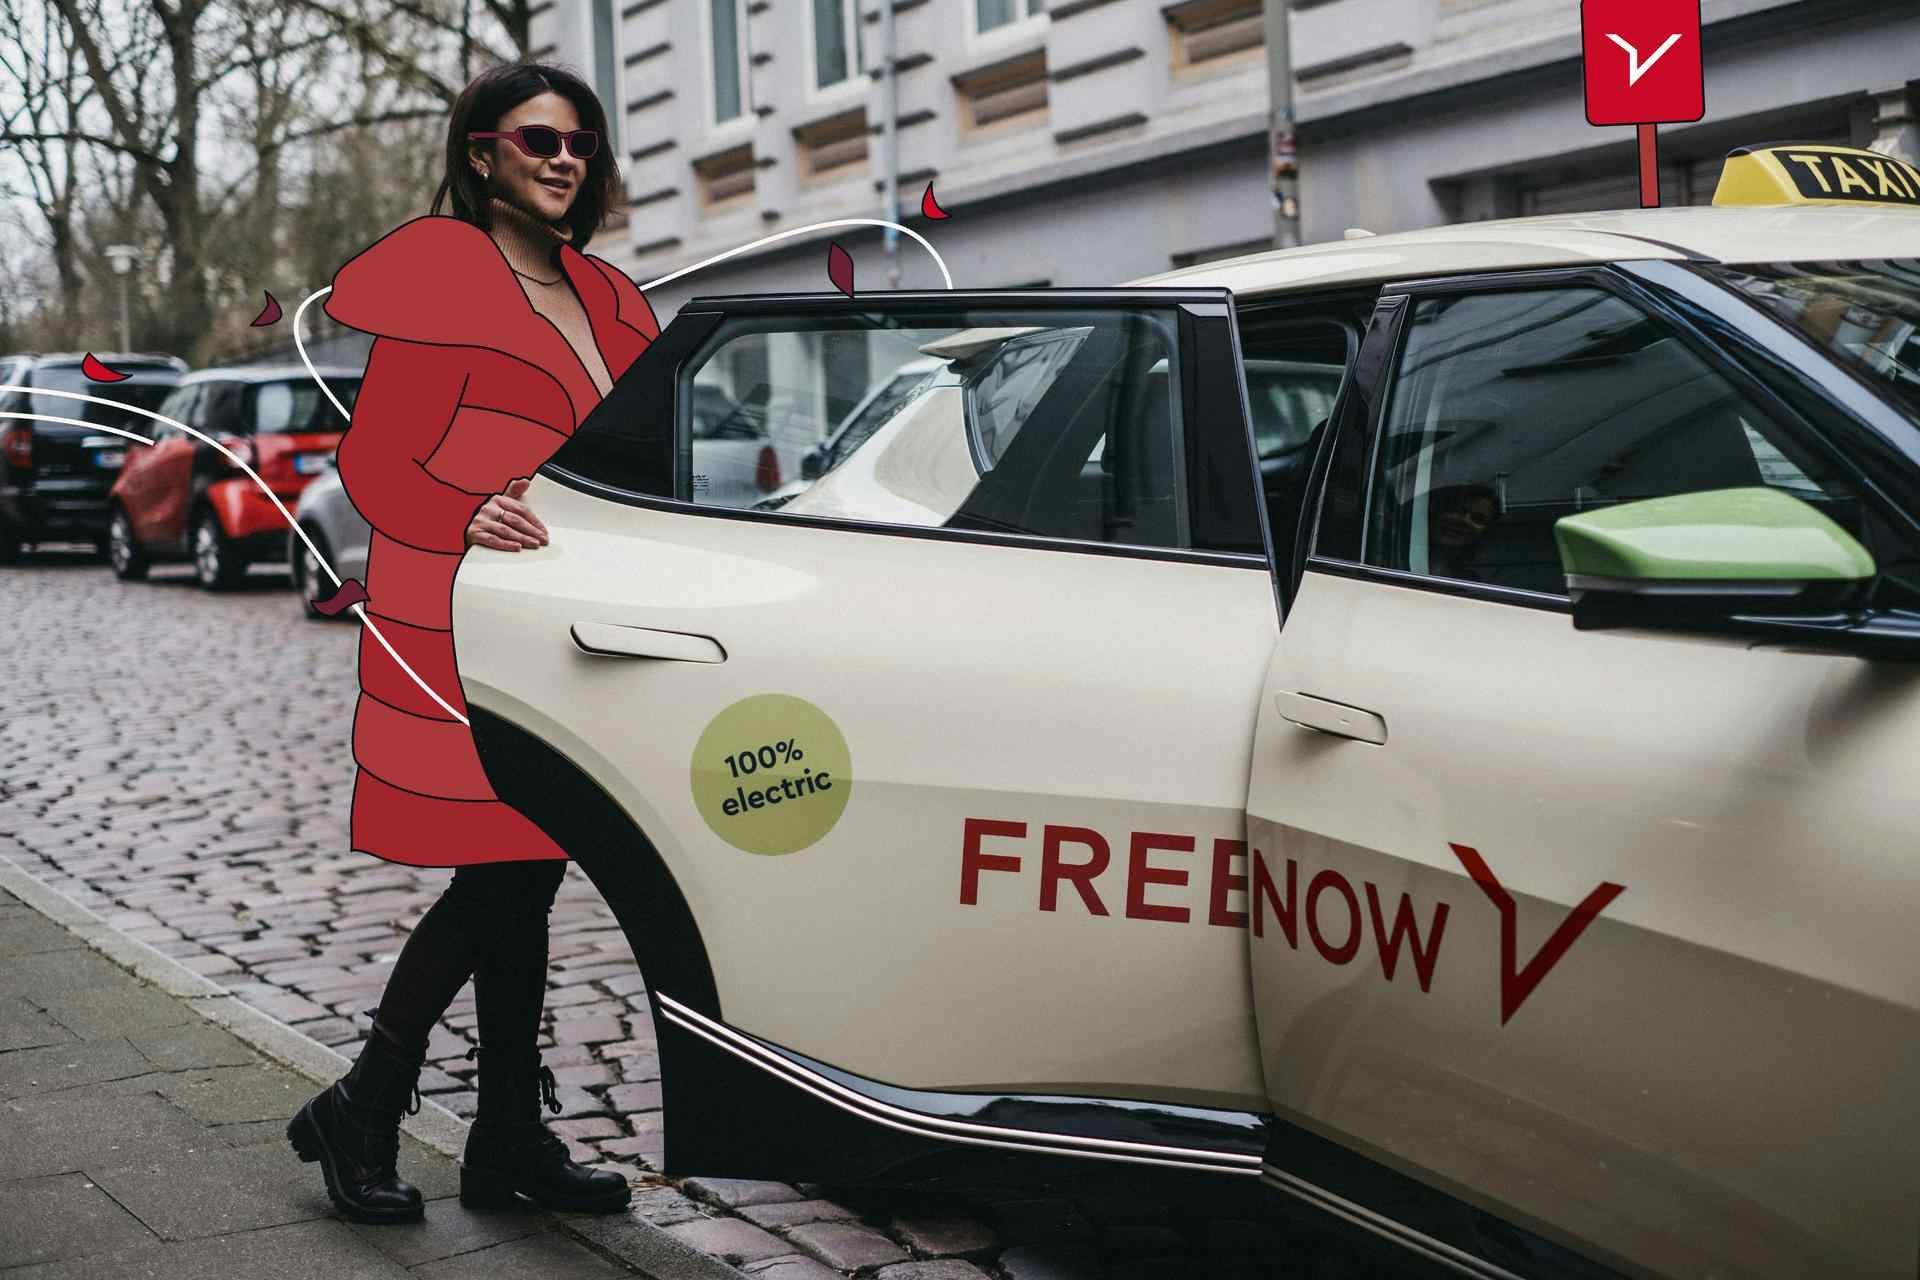  Un empleado se desplaza al trabajo de forma sostenible con Taxi Green, el taxi ecológico de FREENOW